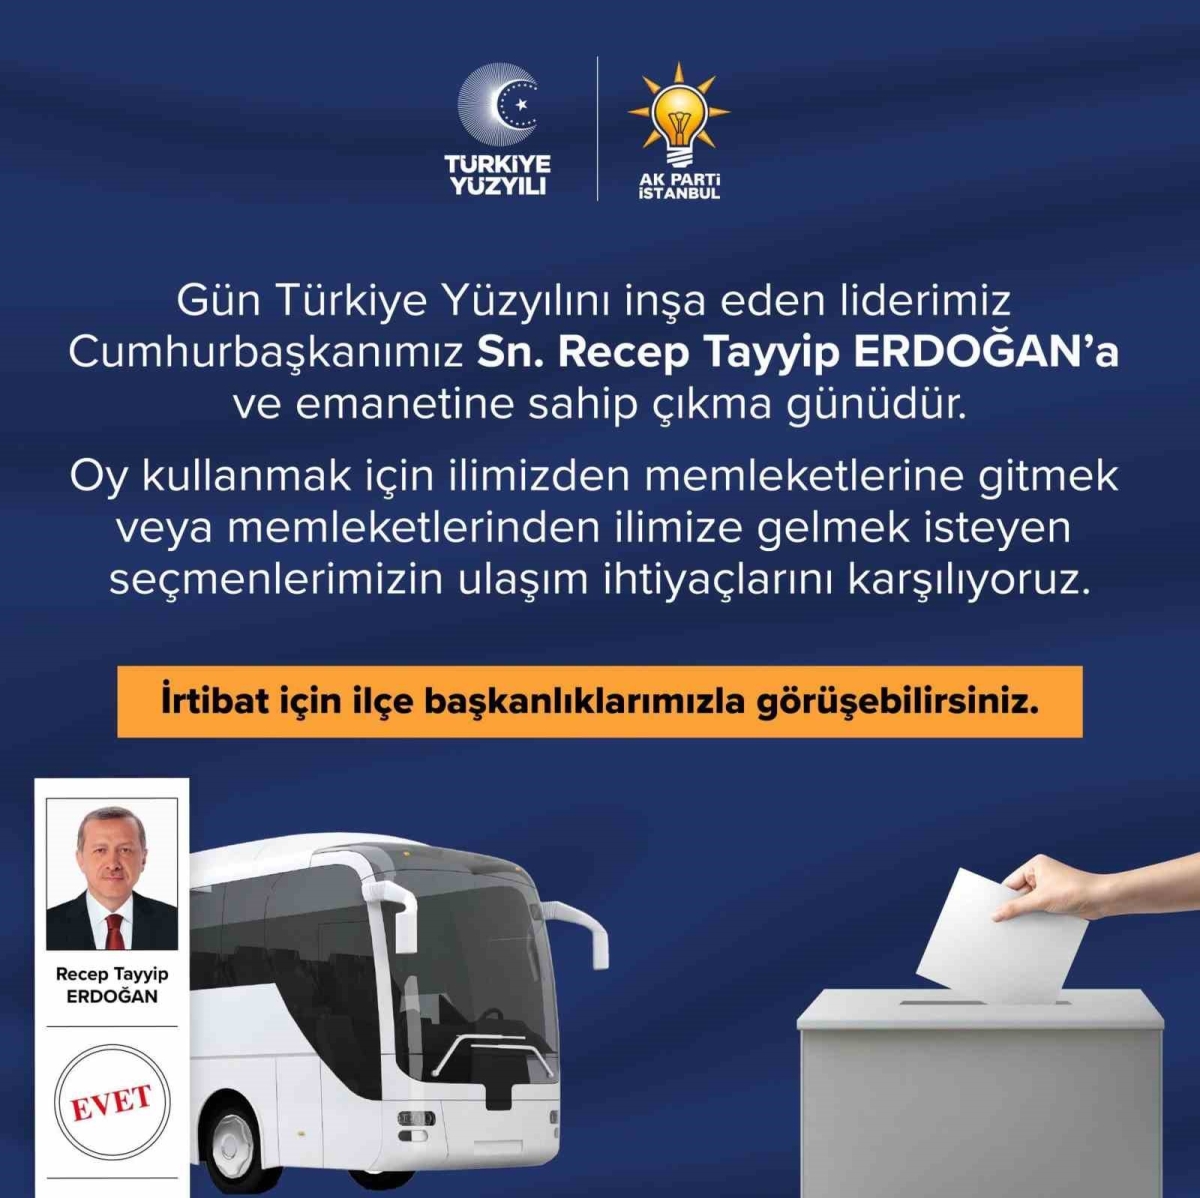 AK Parti İstanbul’dan 28 Mayıs’ta seçmenlere ücretsiz ulaşım hizmeti
